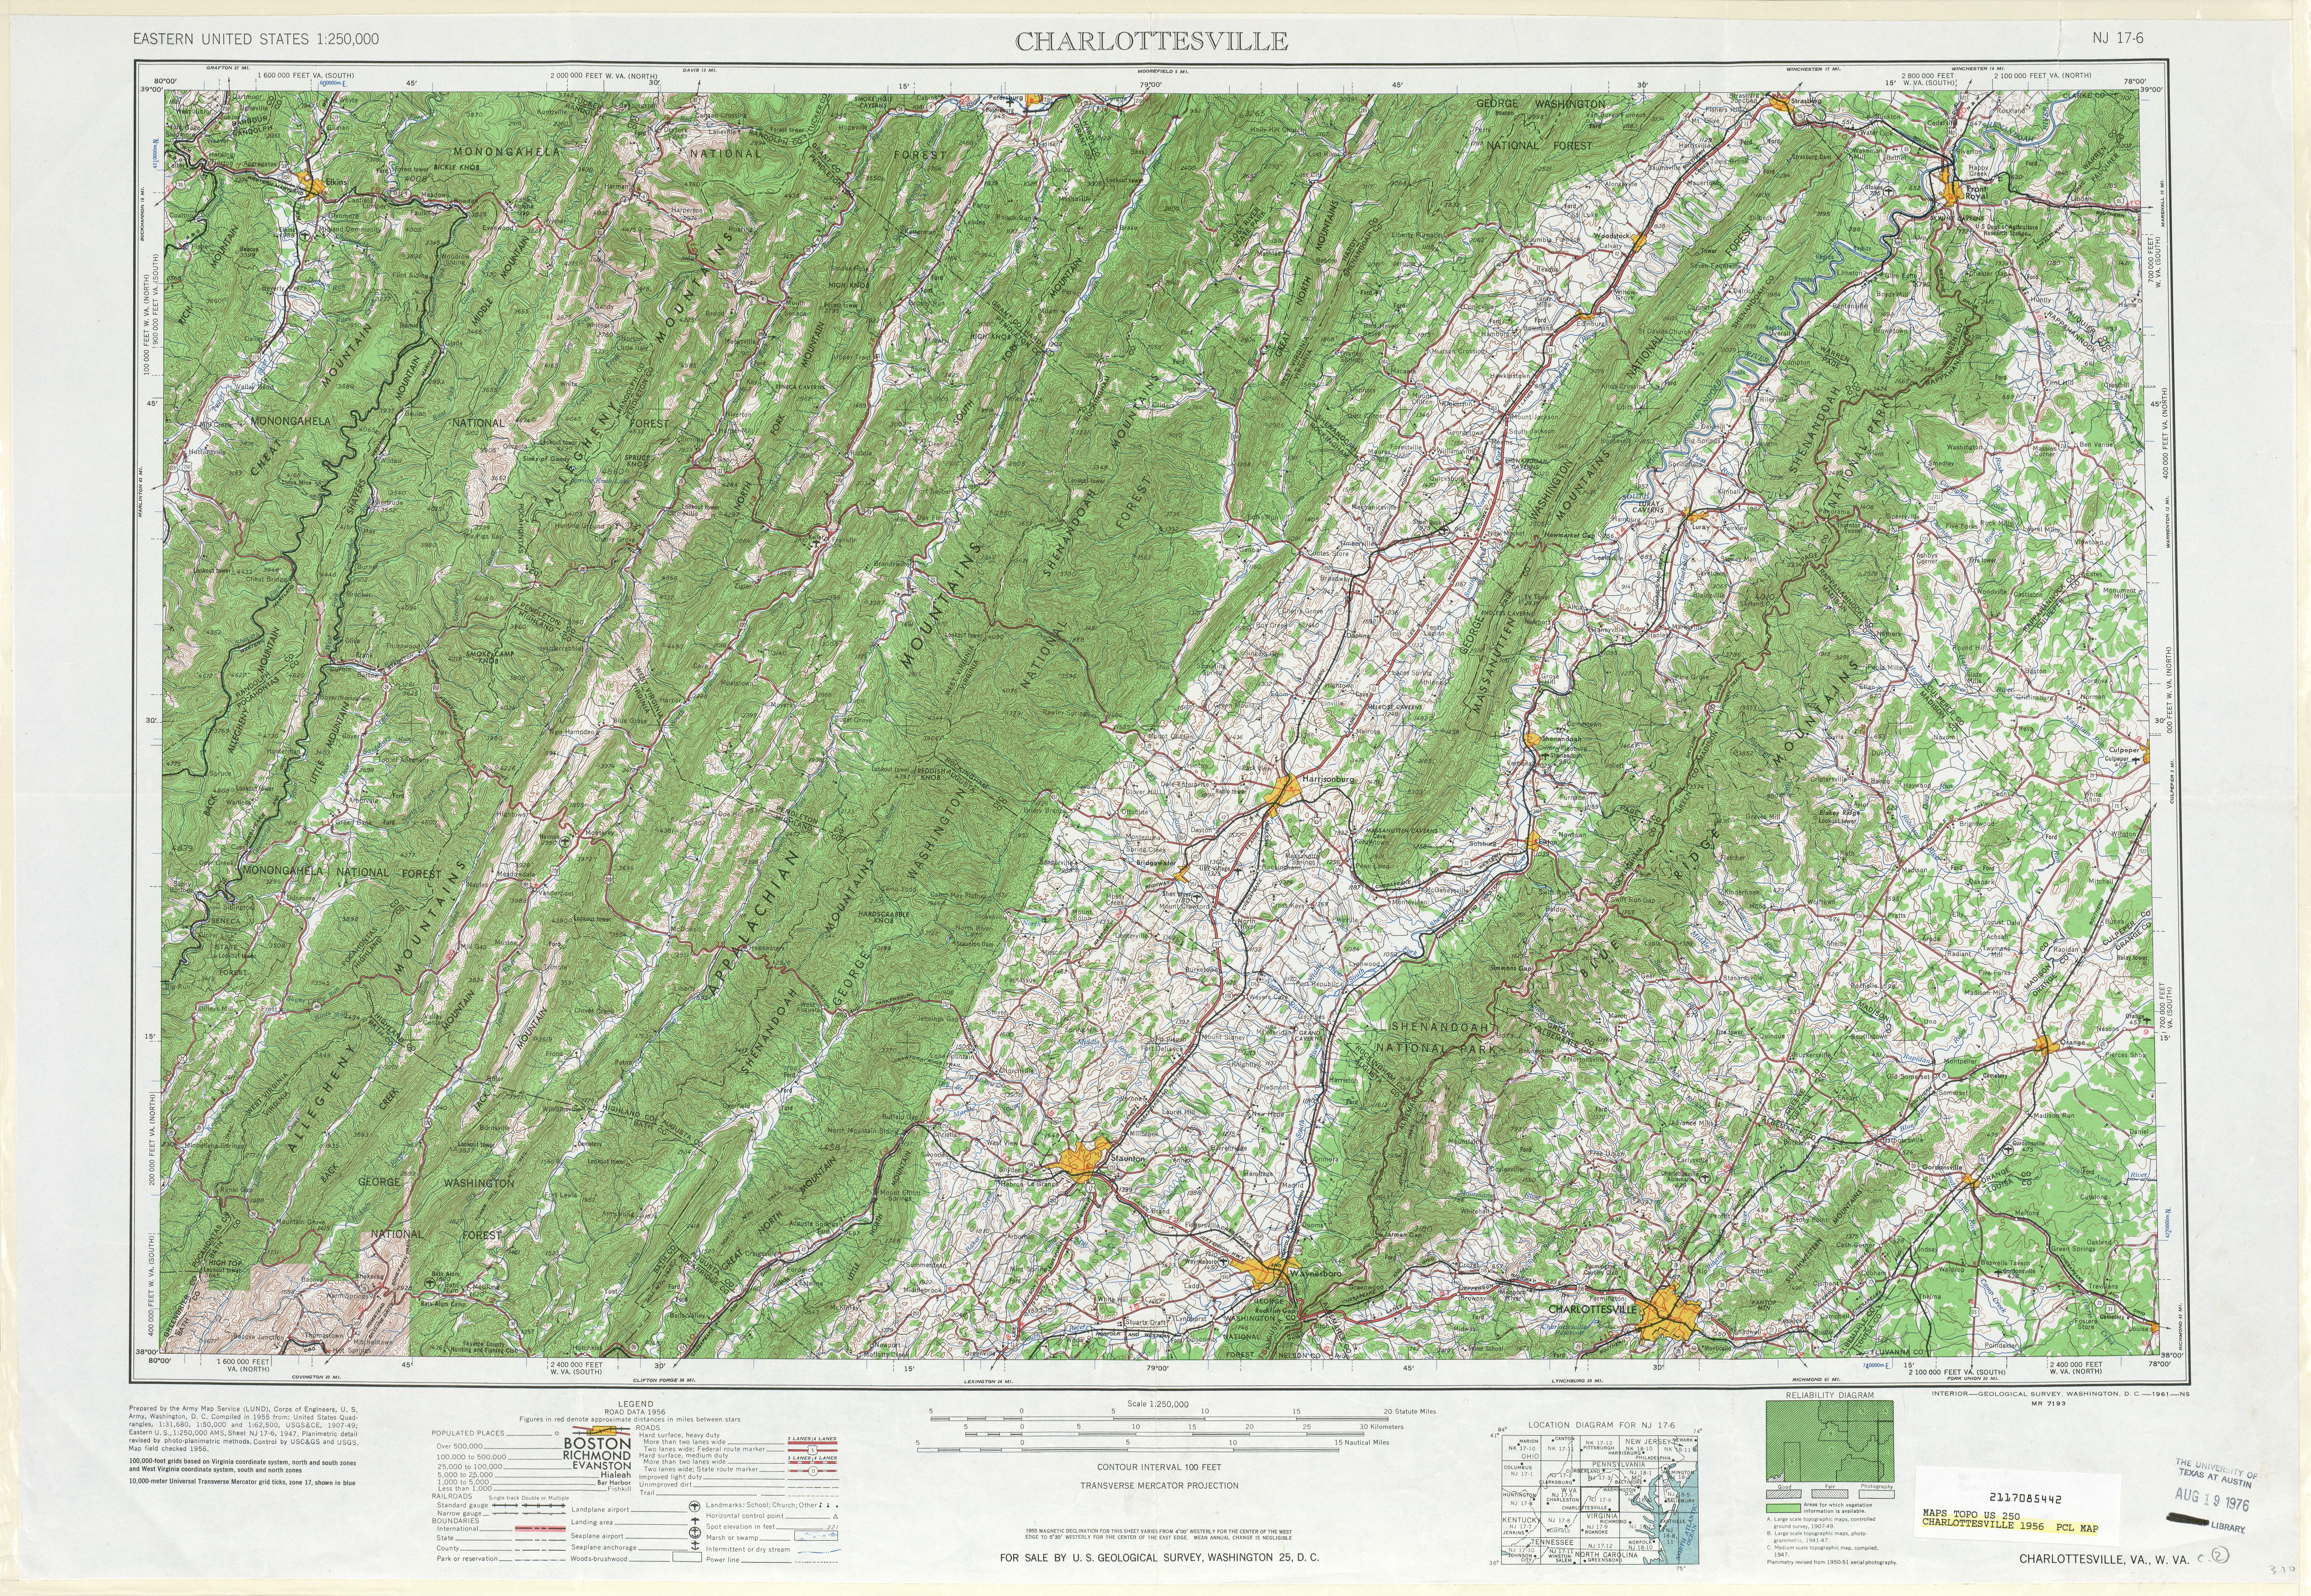 Hoja Charlottesville del Mapa de Relieve Sombreado de los Estados Unidos 1956